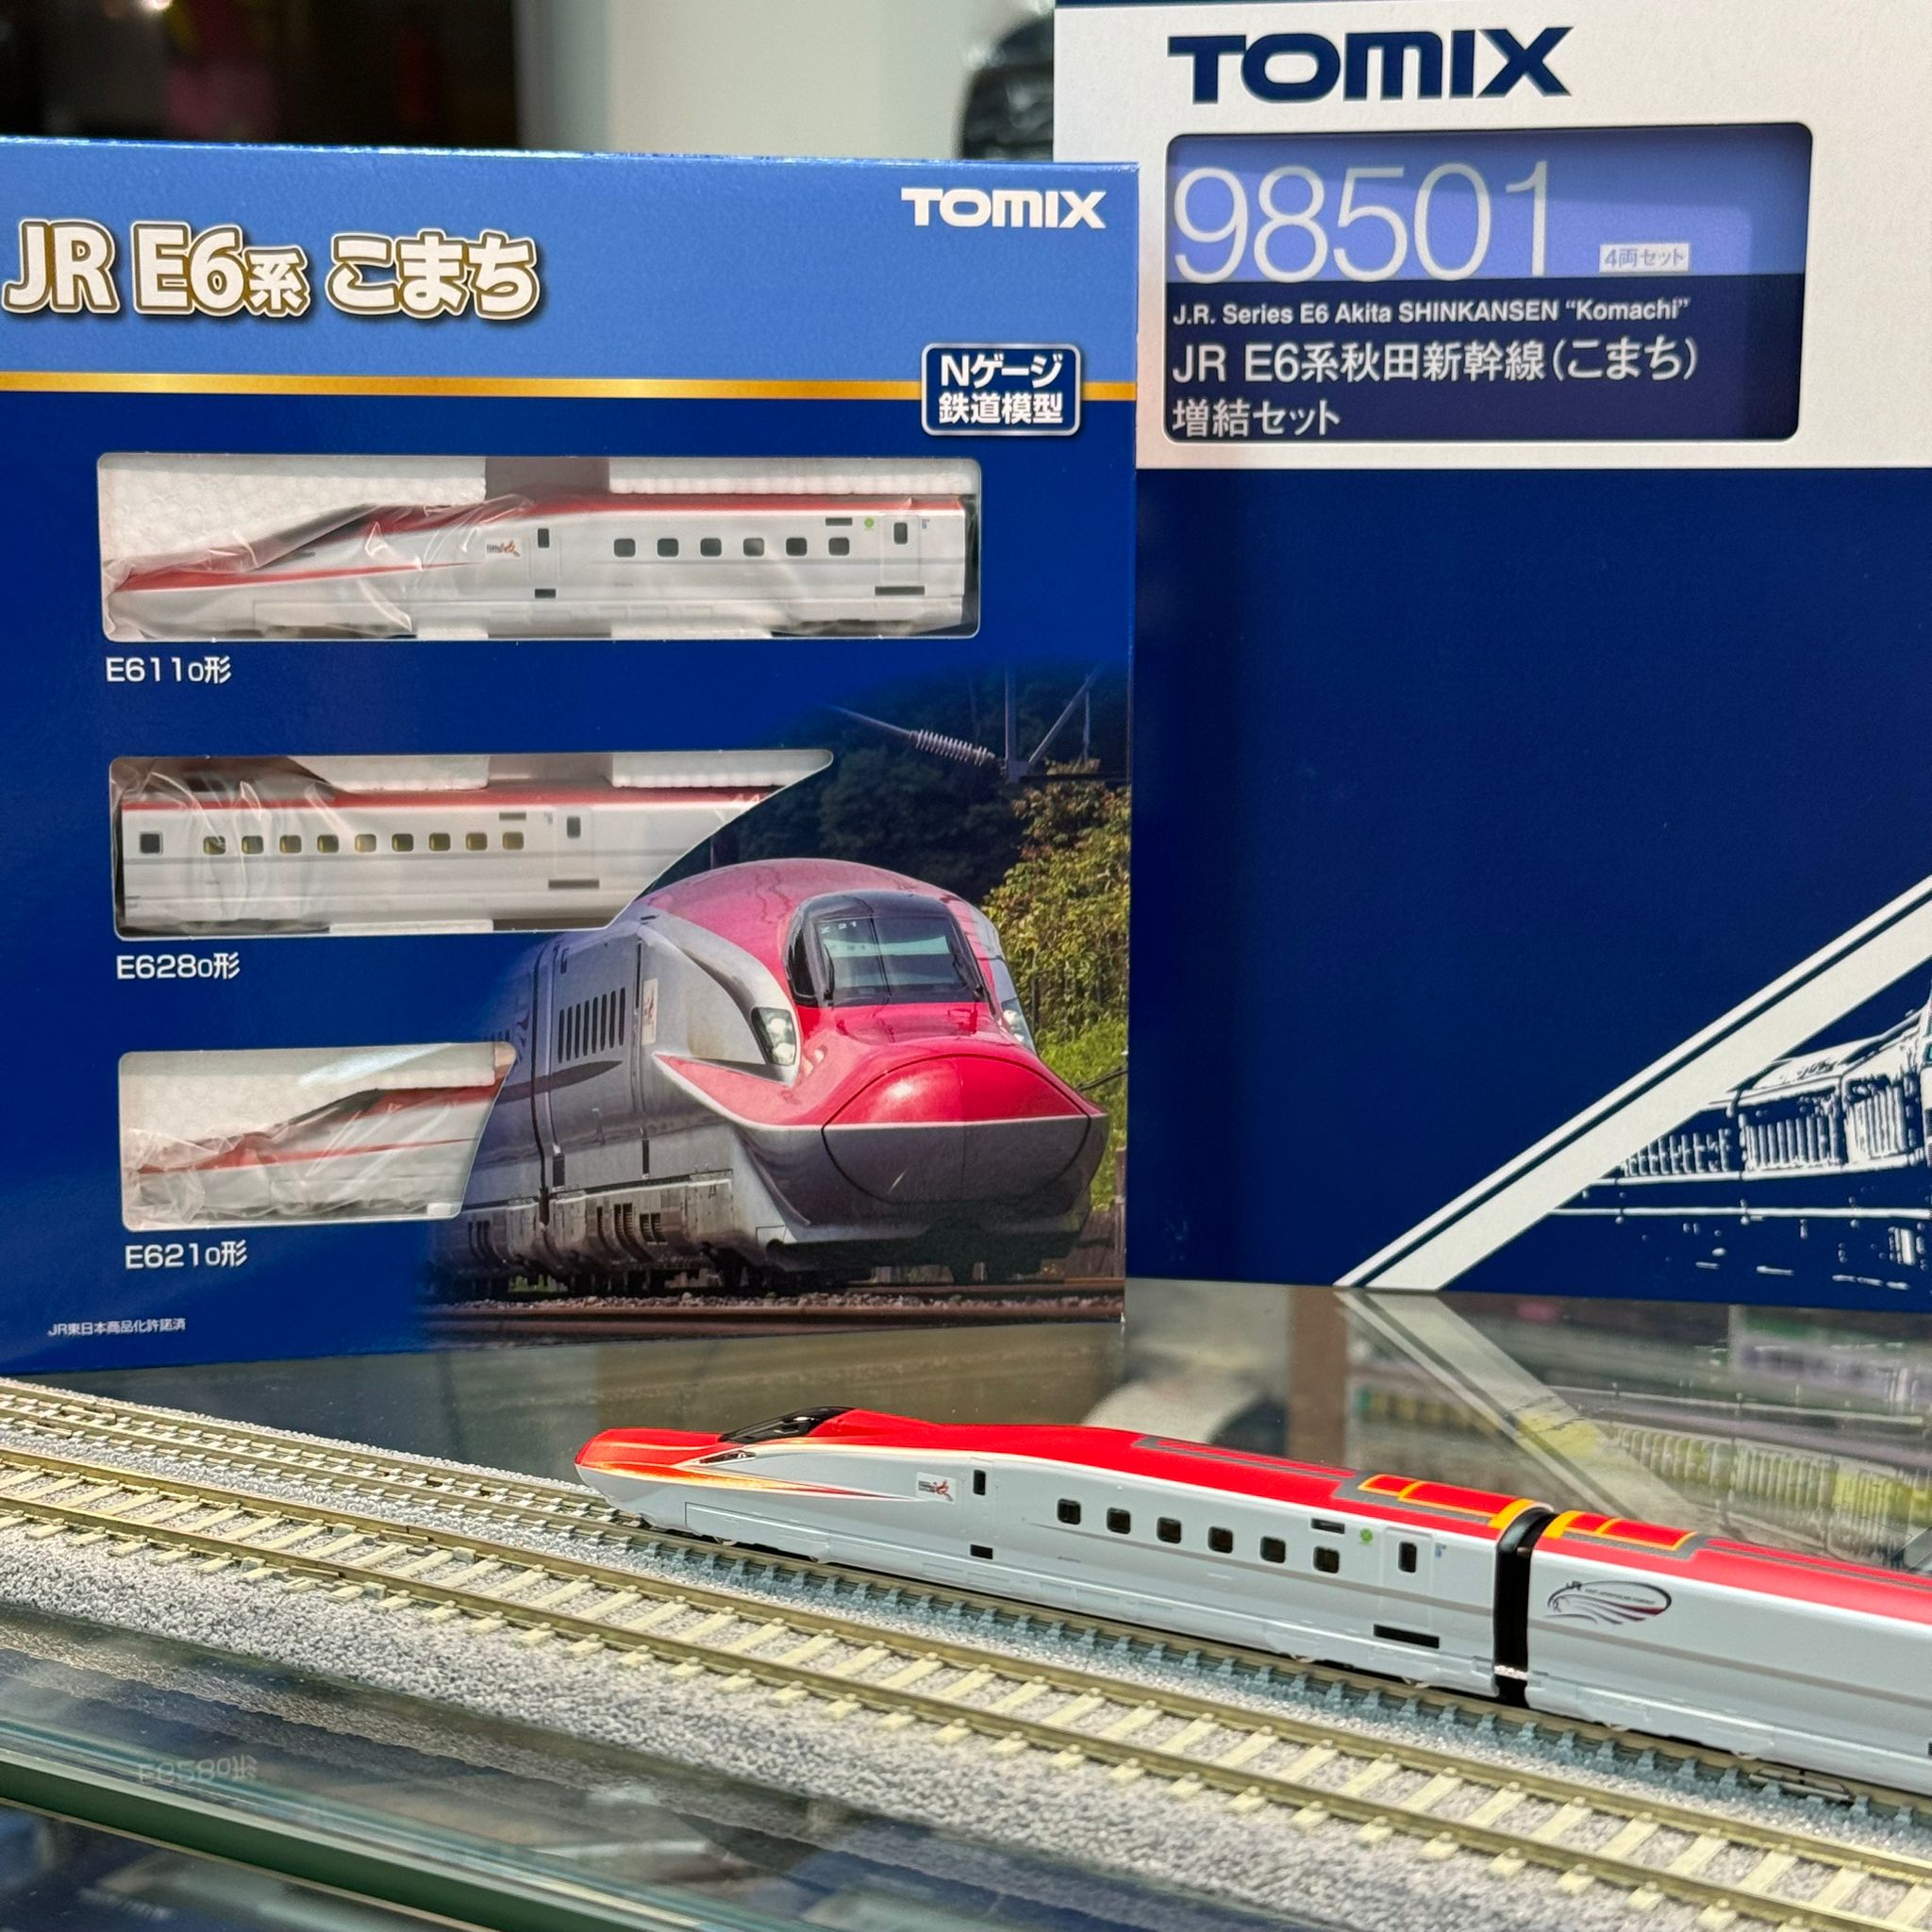 TOMIX 98500 98501 JR E6系 秋田新幹線 (こまち) 7両 セット - Khaho Store 咔好鐵道模型店